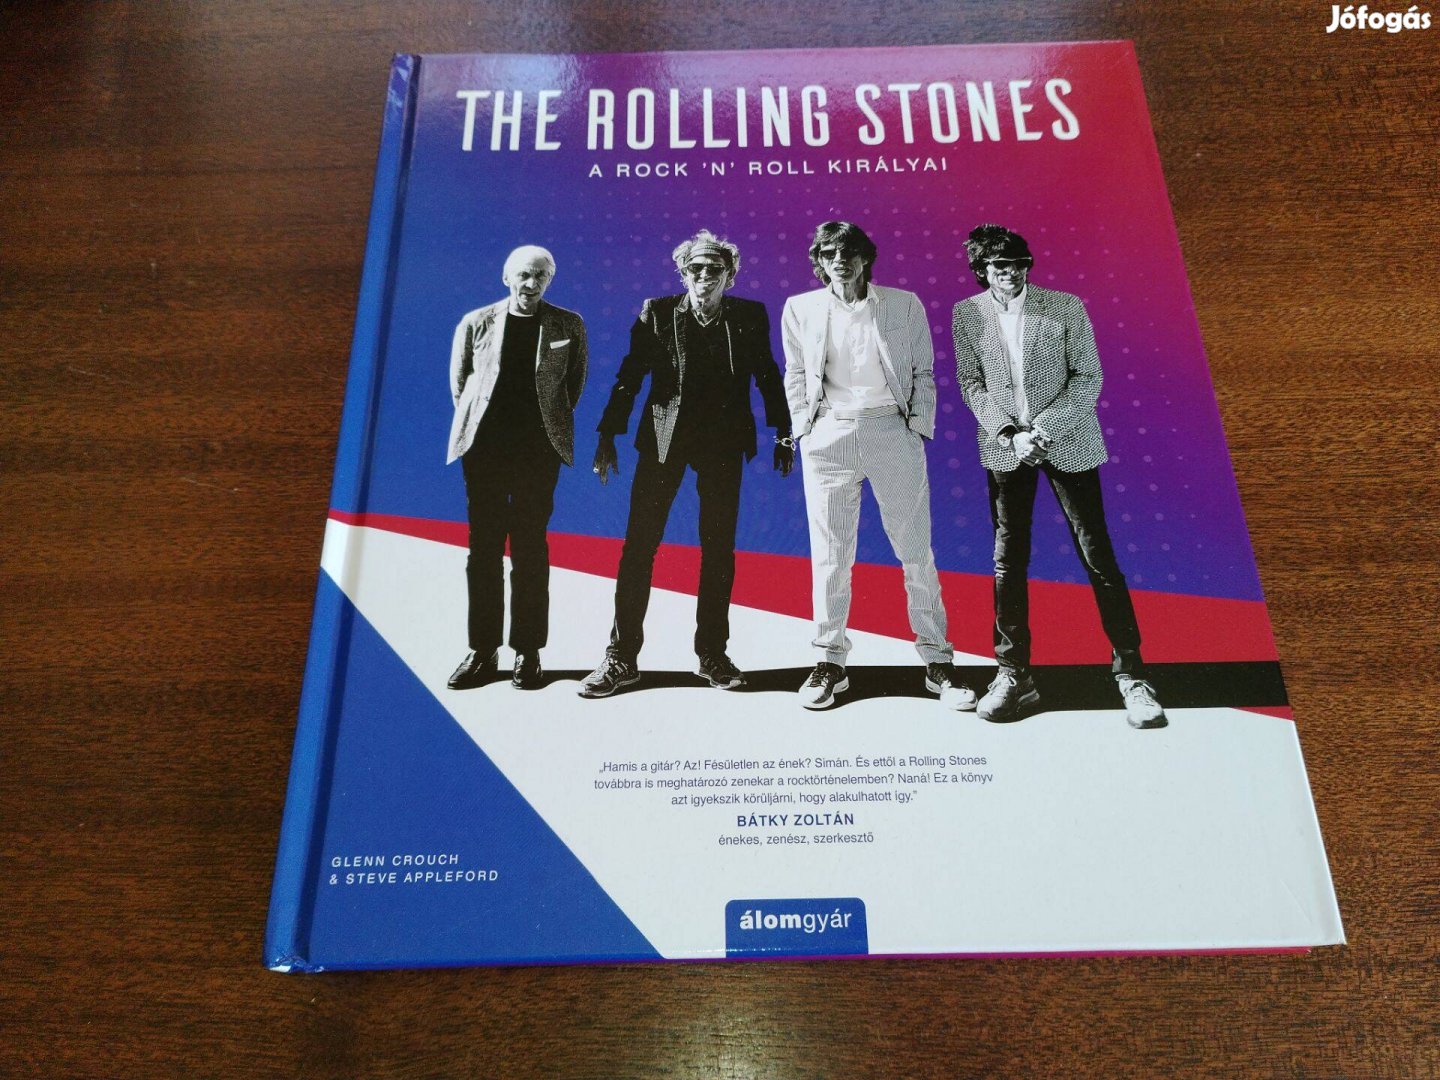 The Rolling Stones album